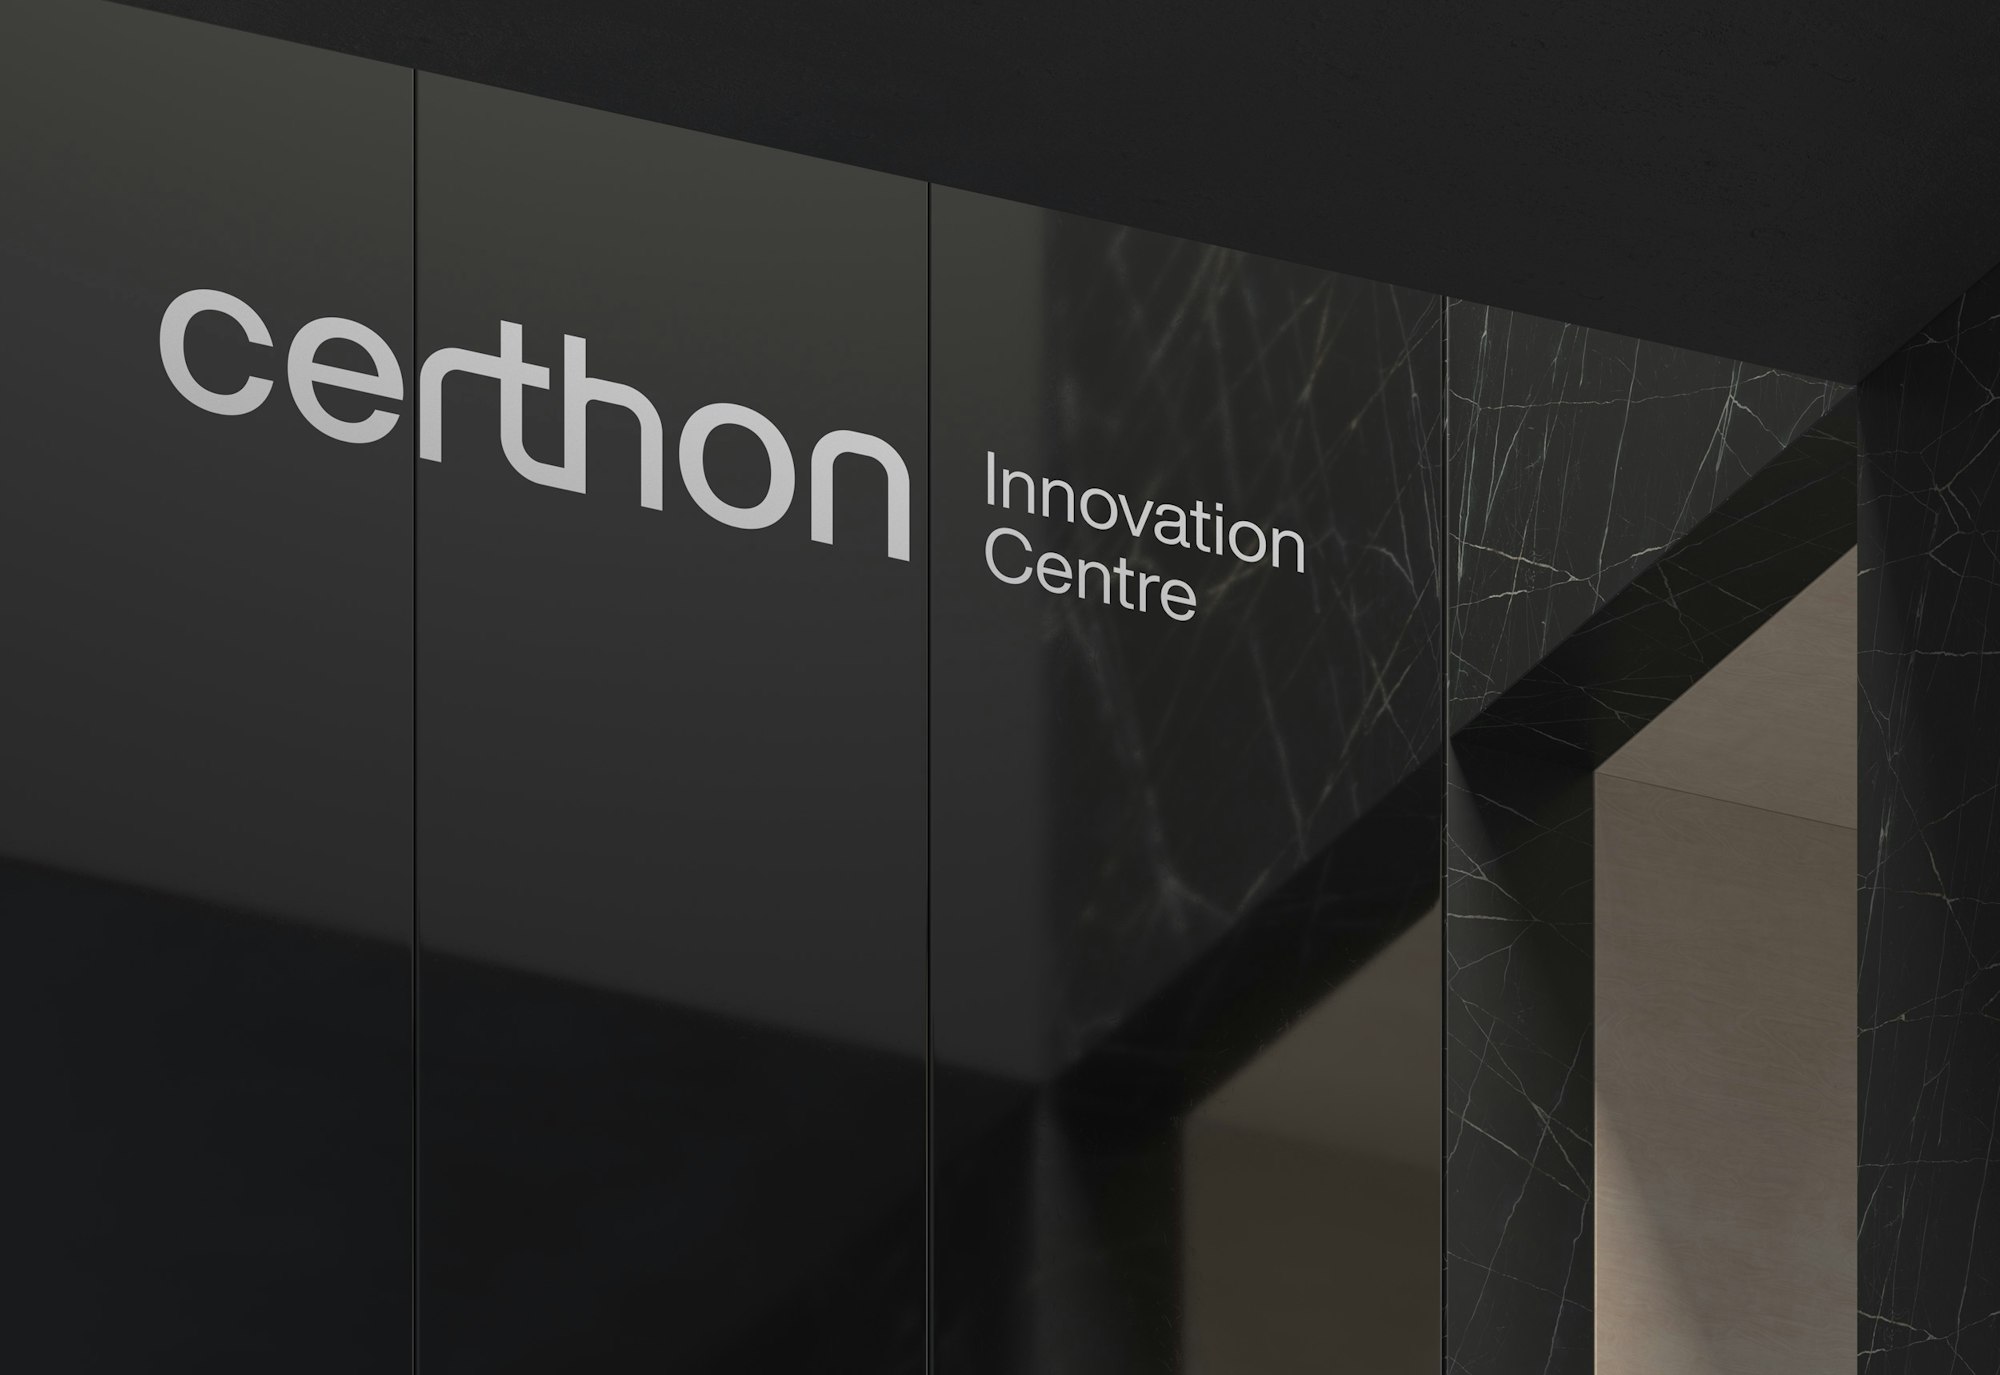 certhon-innovation-centre-signage-logo-mockup